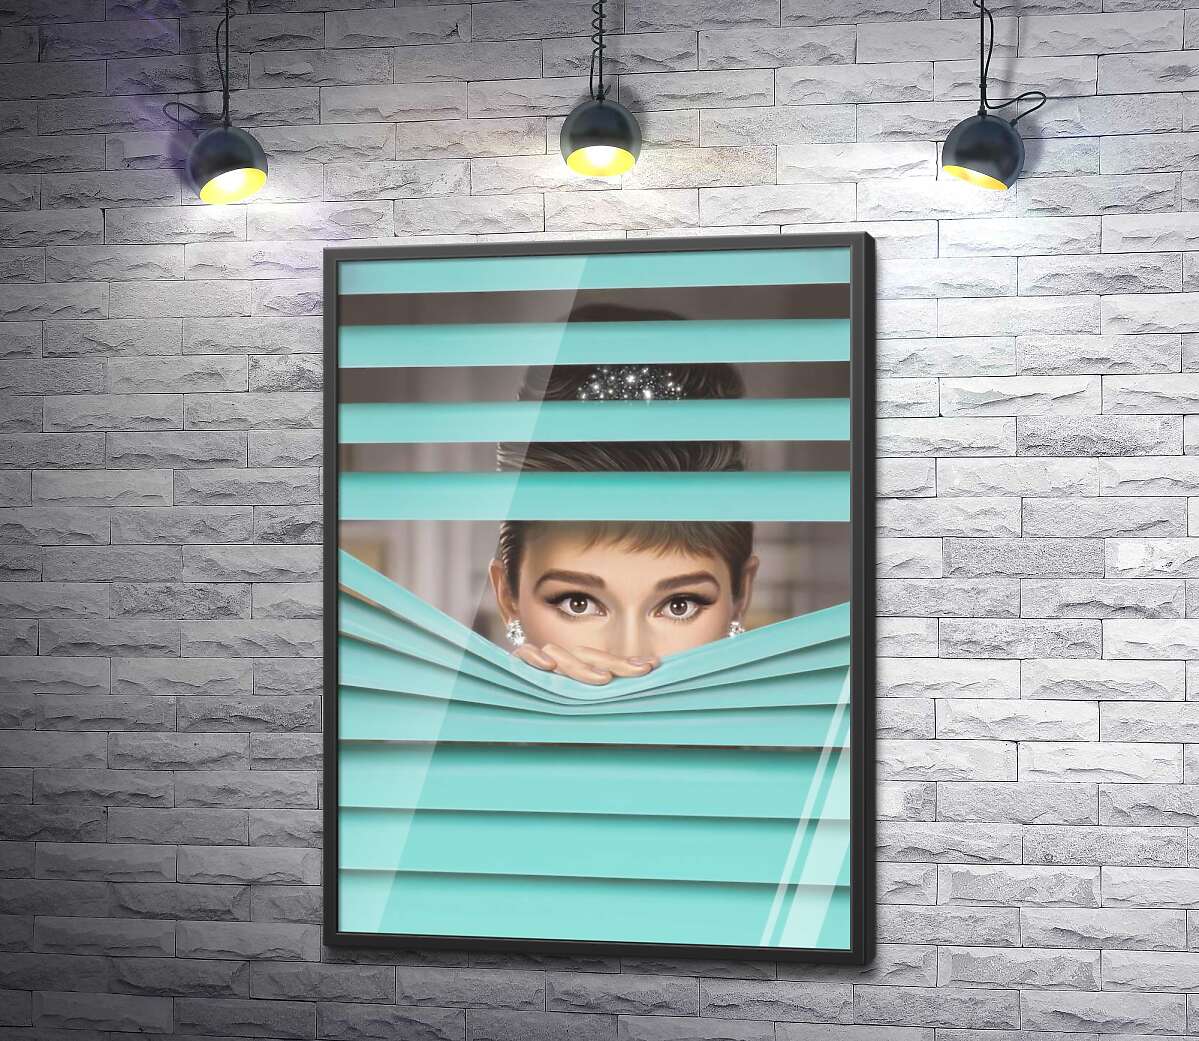 постер Одрі Гепберн (Audrey Hepburn) в ролі героїні фільму "Сніданок у "Тіффані"" (Breakfast at Tiffany's)